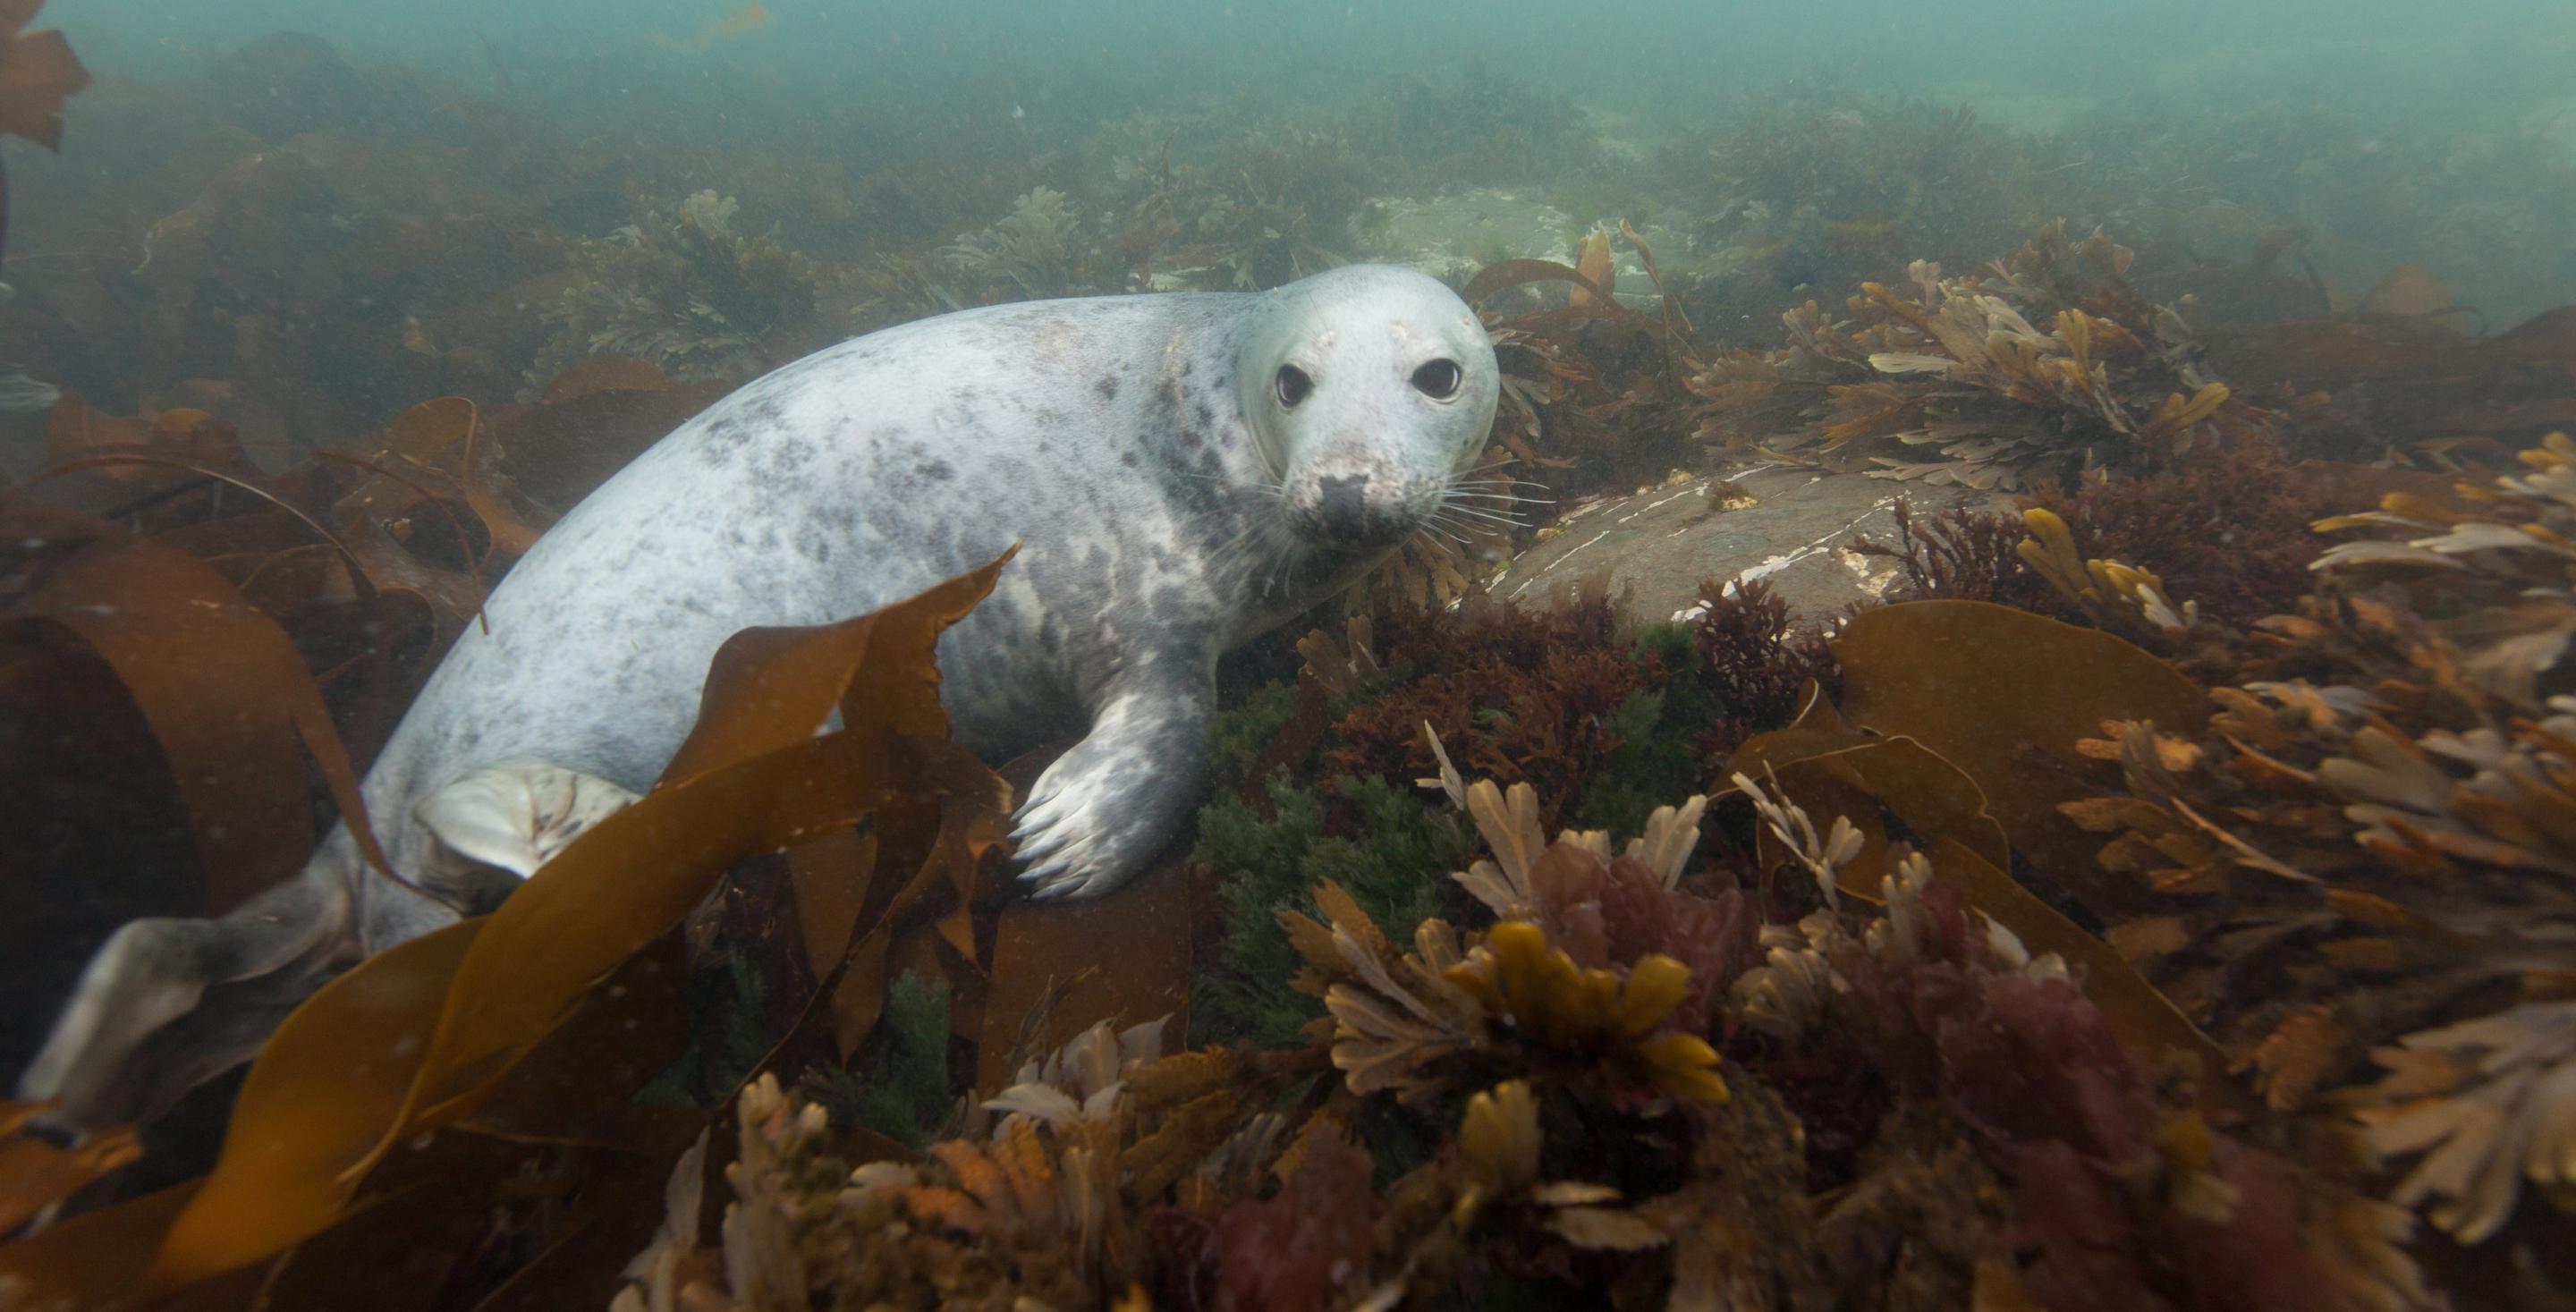 Plongée aux iles de Farne avec les phoques - Angleterre - Les îles de Farnes sont une zone protégée depuis 1945 et abritent une colonie particulièrement importante de phoques (Phoca vitulina)